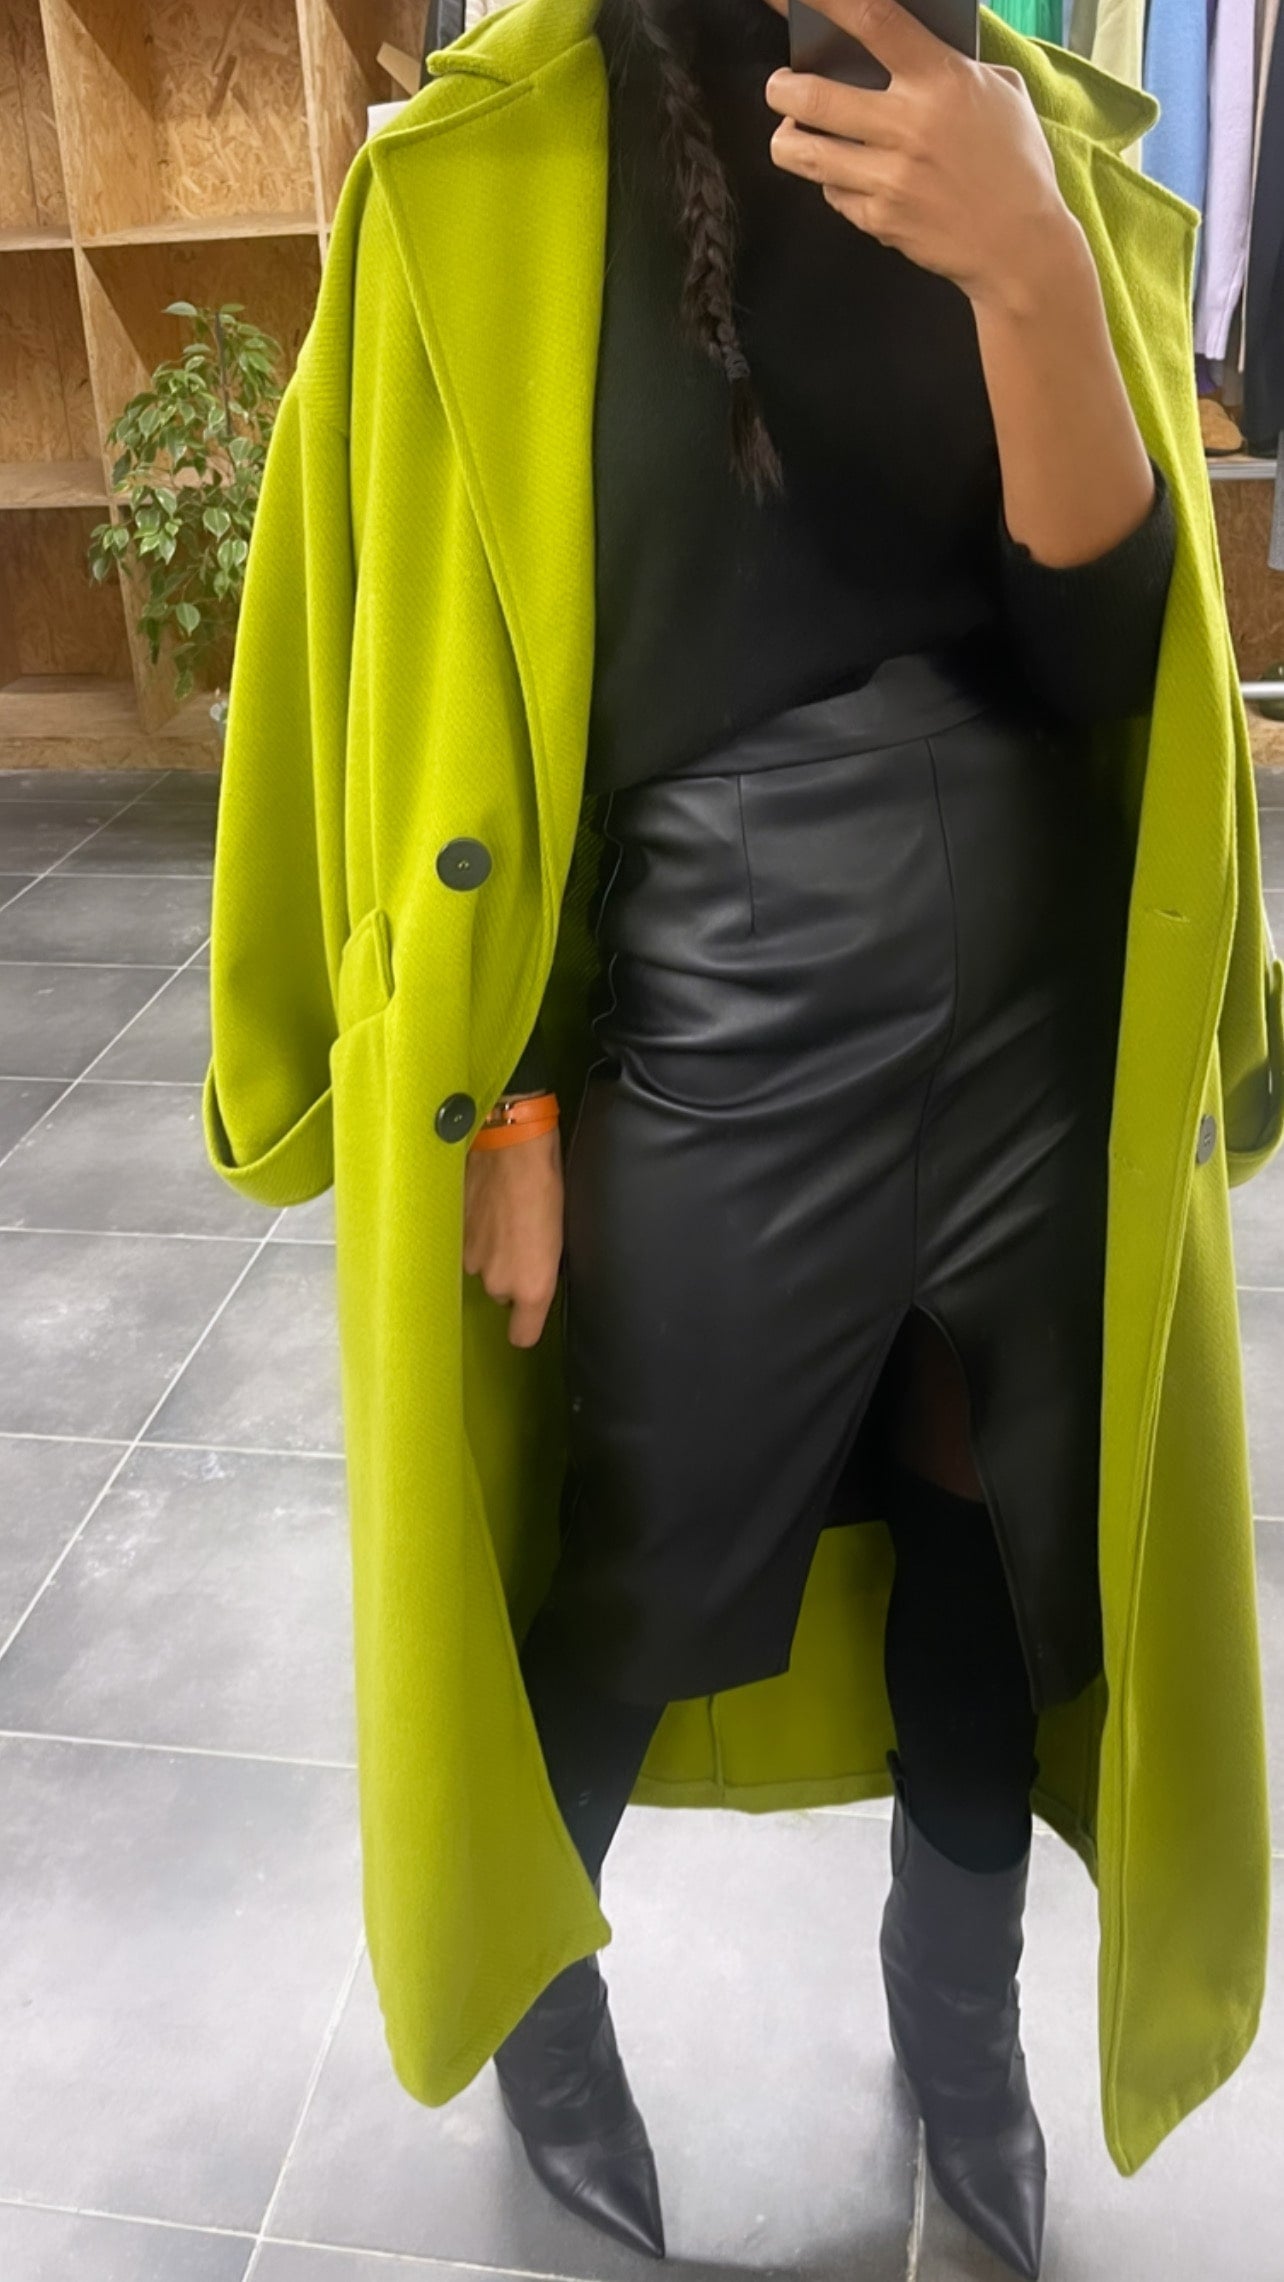 jupe crayon en similicuir noir portée avec un manteau vert fluo et bottes noires